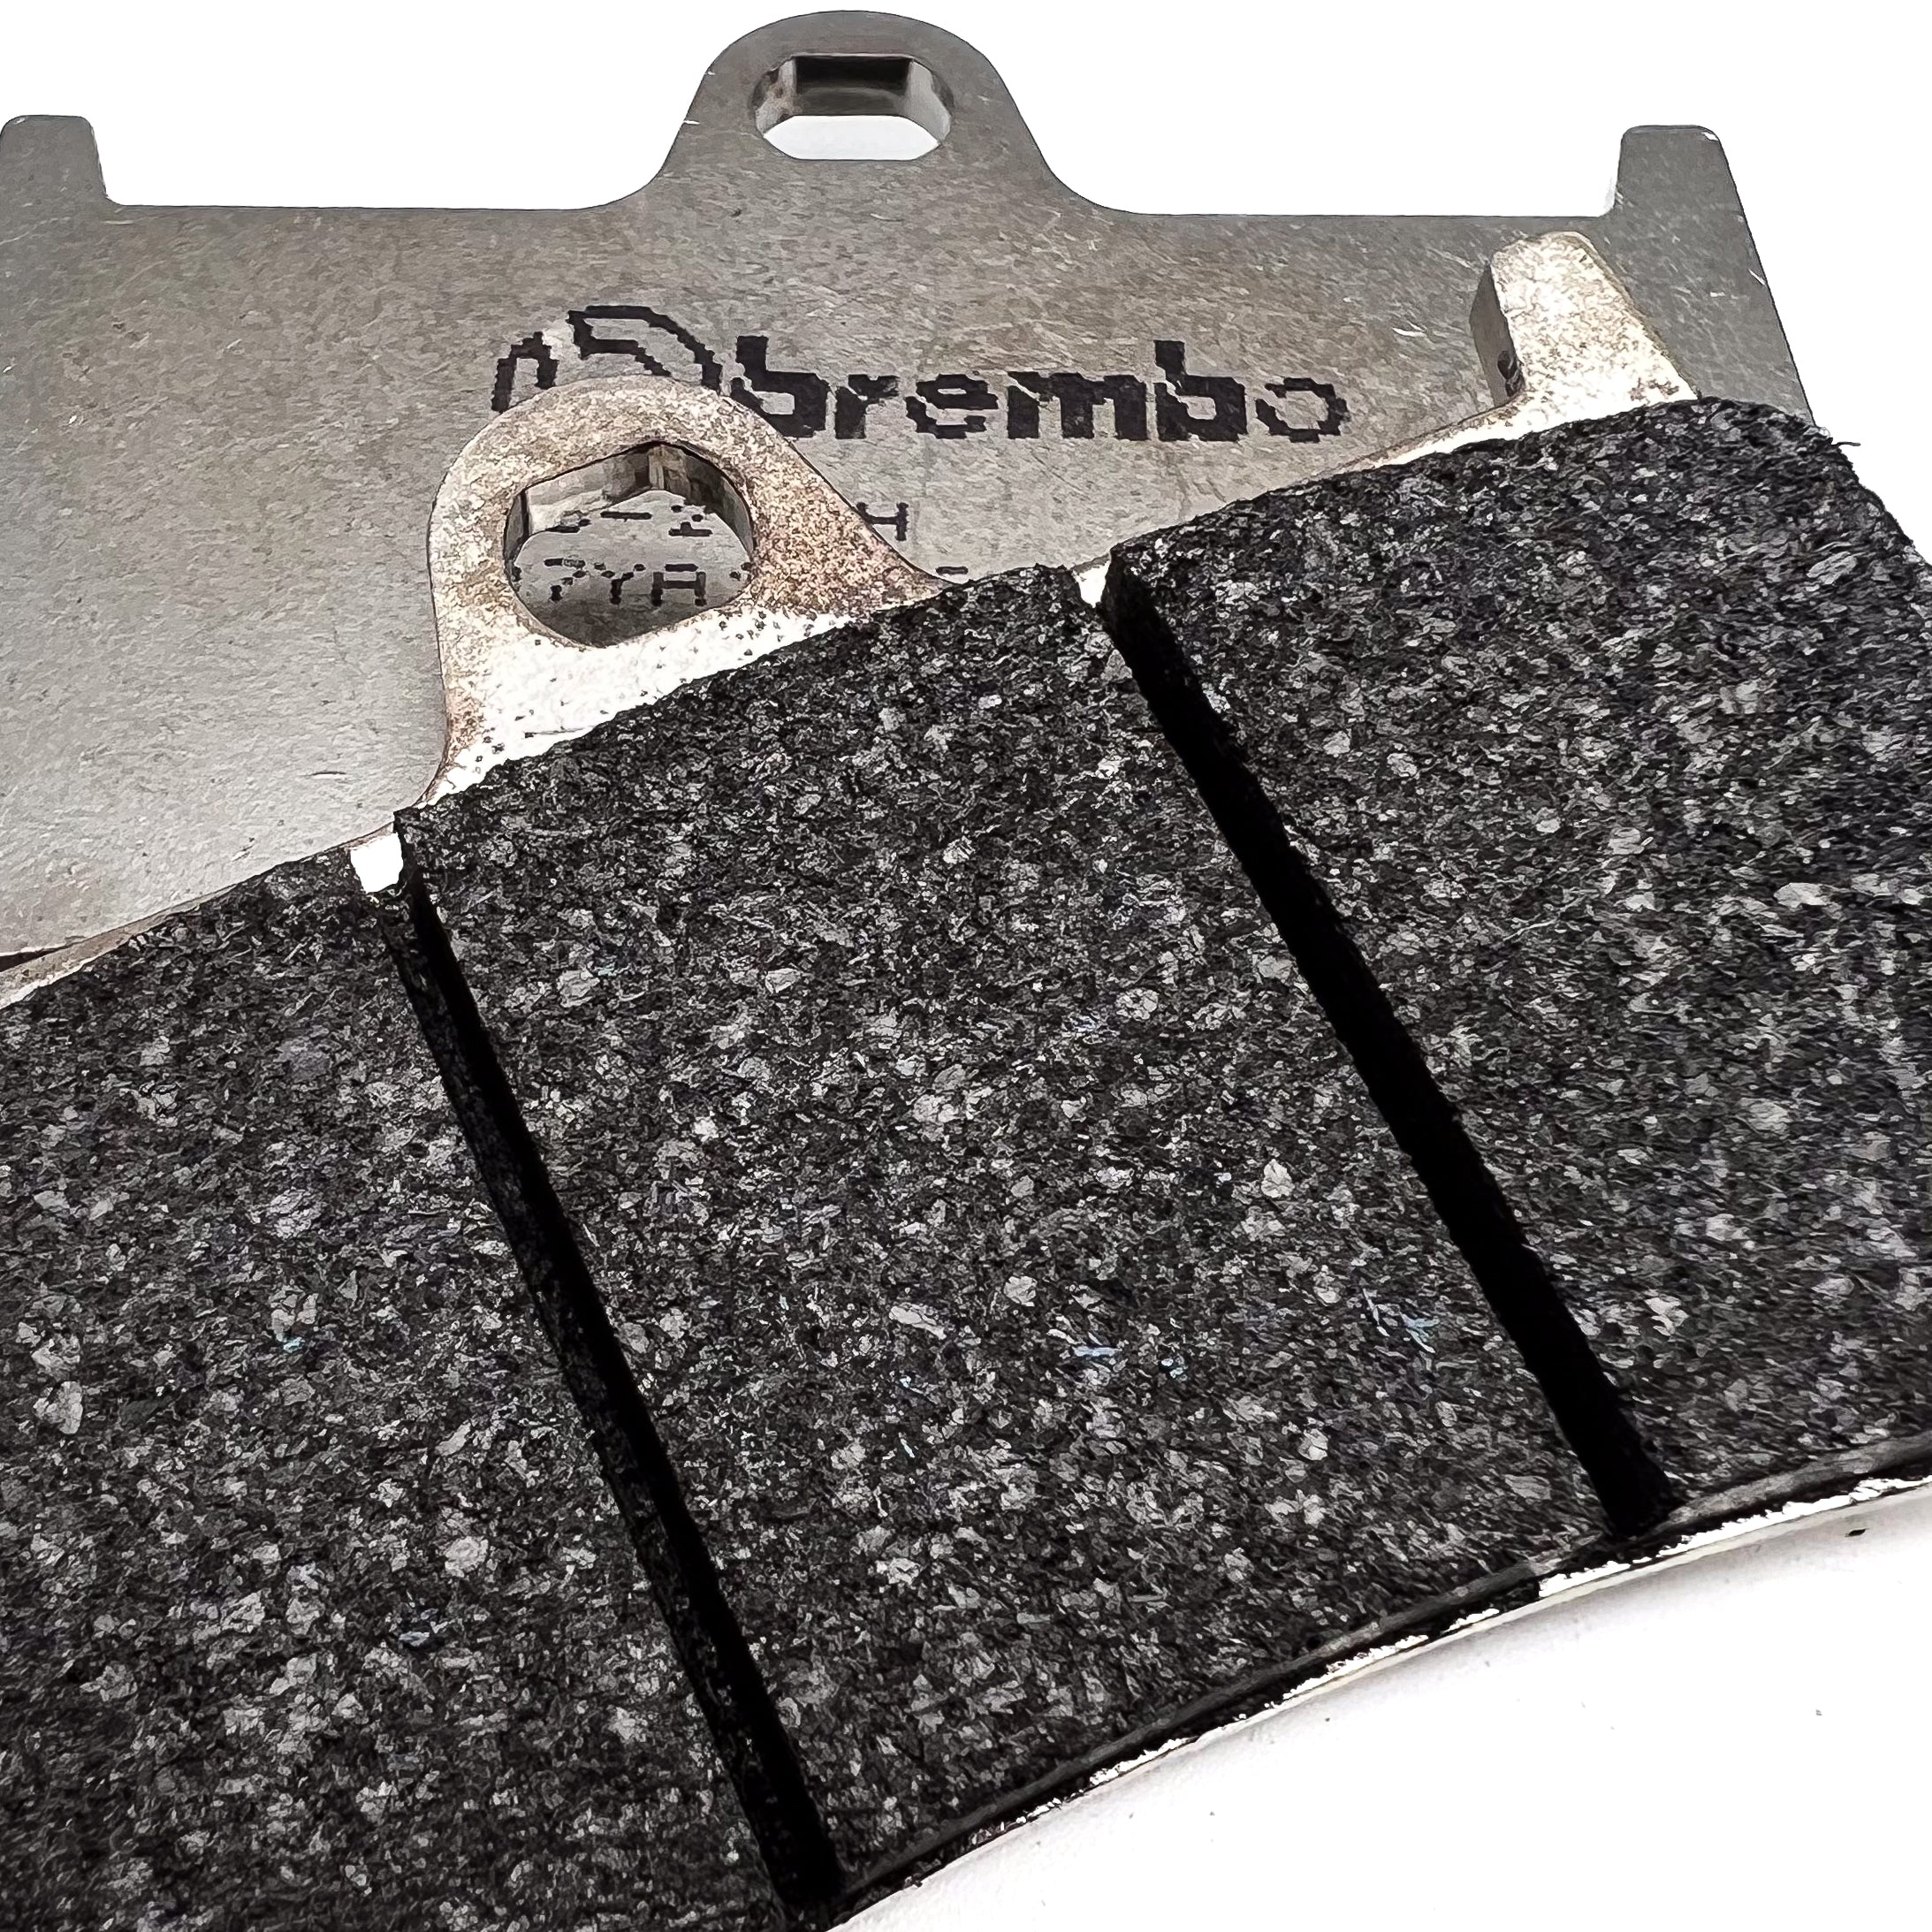 Brembo TMAX carbon ceramic front brake pads